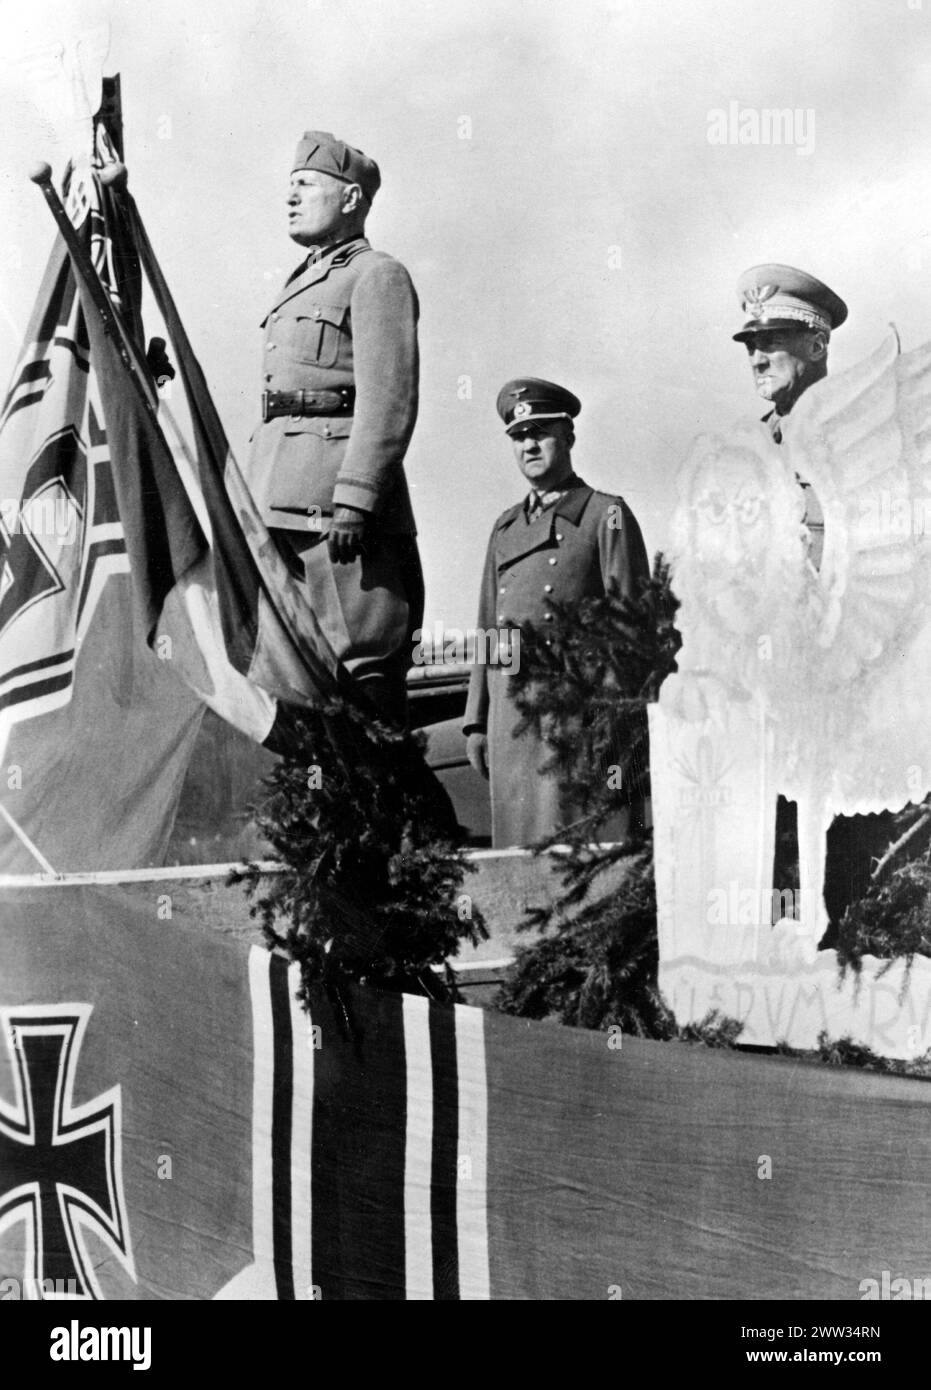 Le leader de l'Italie fasciste, Benito Mussolini, parle aux soldats italiens. Derrière lui se trouvent le colonel-général allemand Friedrich Fromm (à droite) et le maréchal italien Rodolfo Graziani. Avril 1944 Banque D'Images